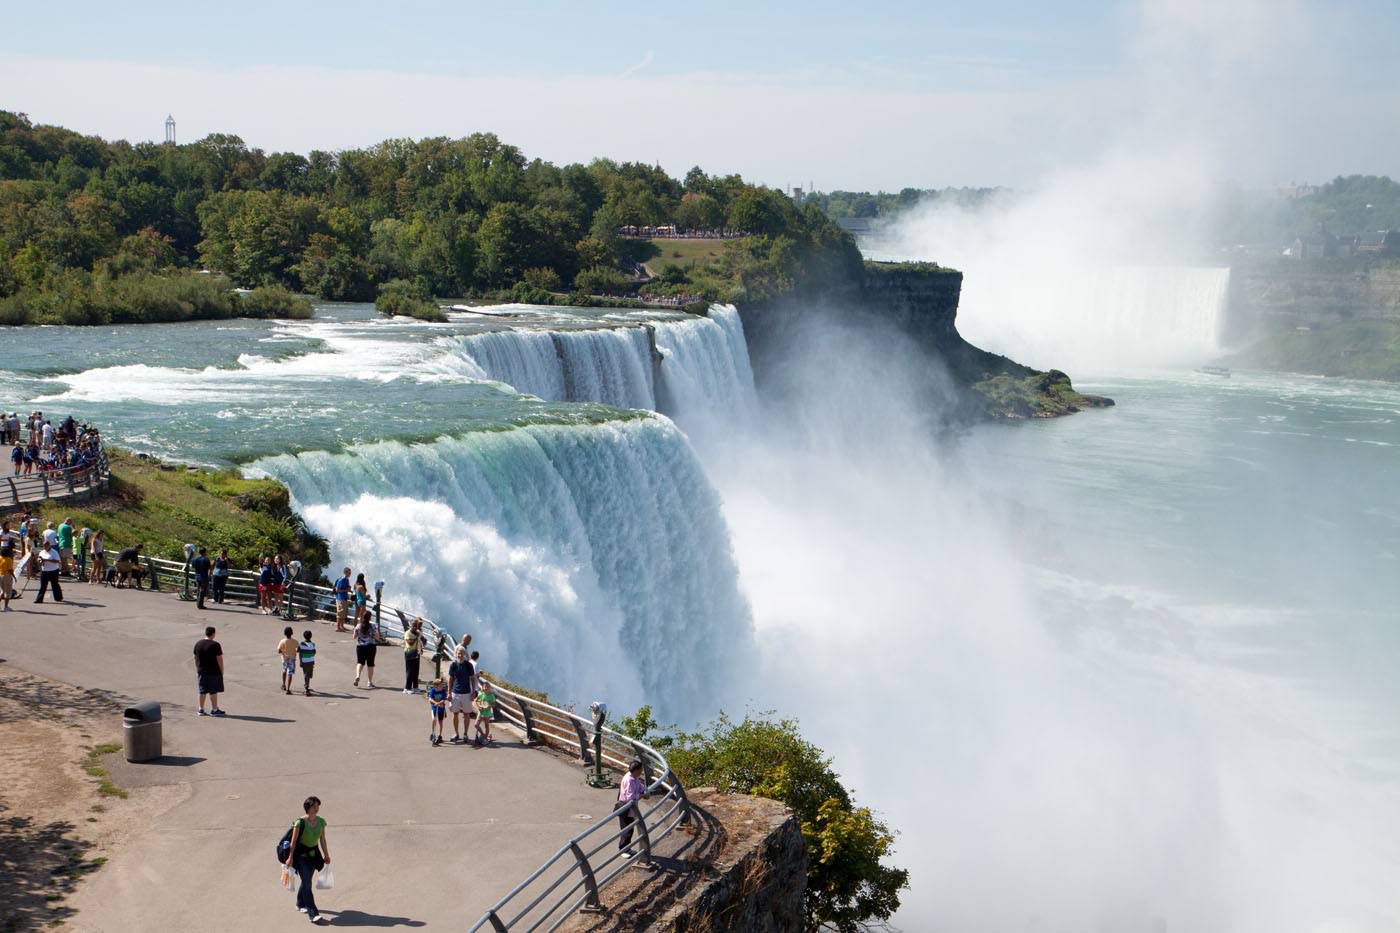 Thinking of moving to Niagara Falls?